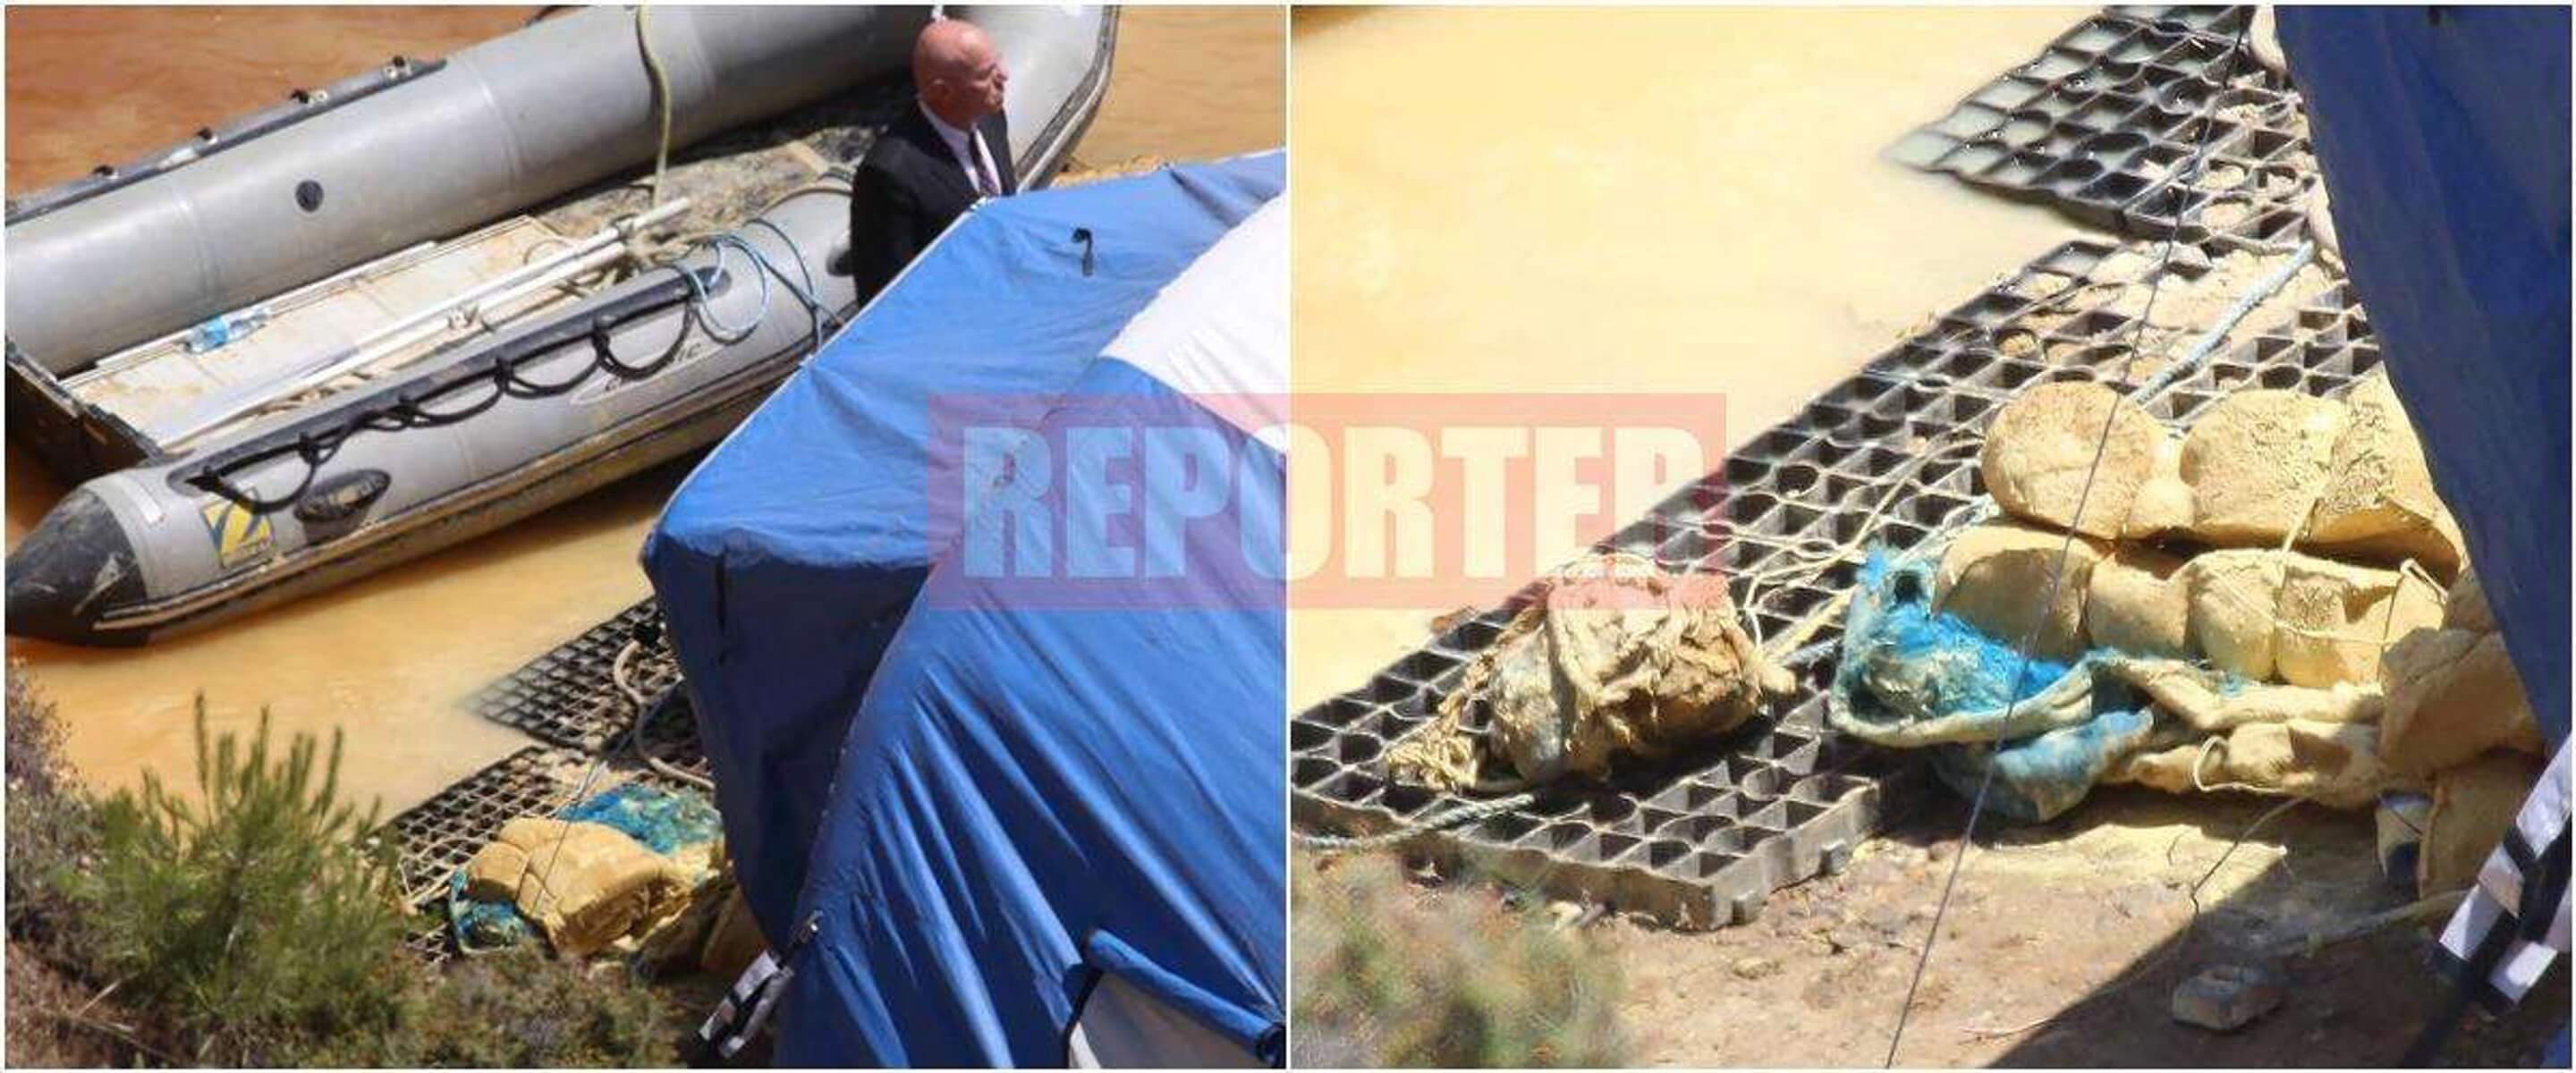 Κύπρος: Αυτό είναι το αντικείμενο που ανασύρθηκε από τη λίμνη του θανάτου!